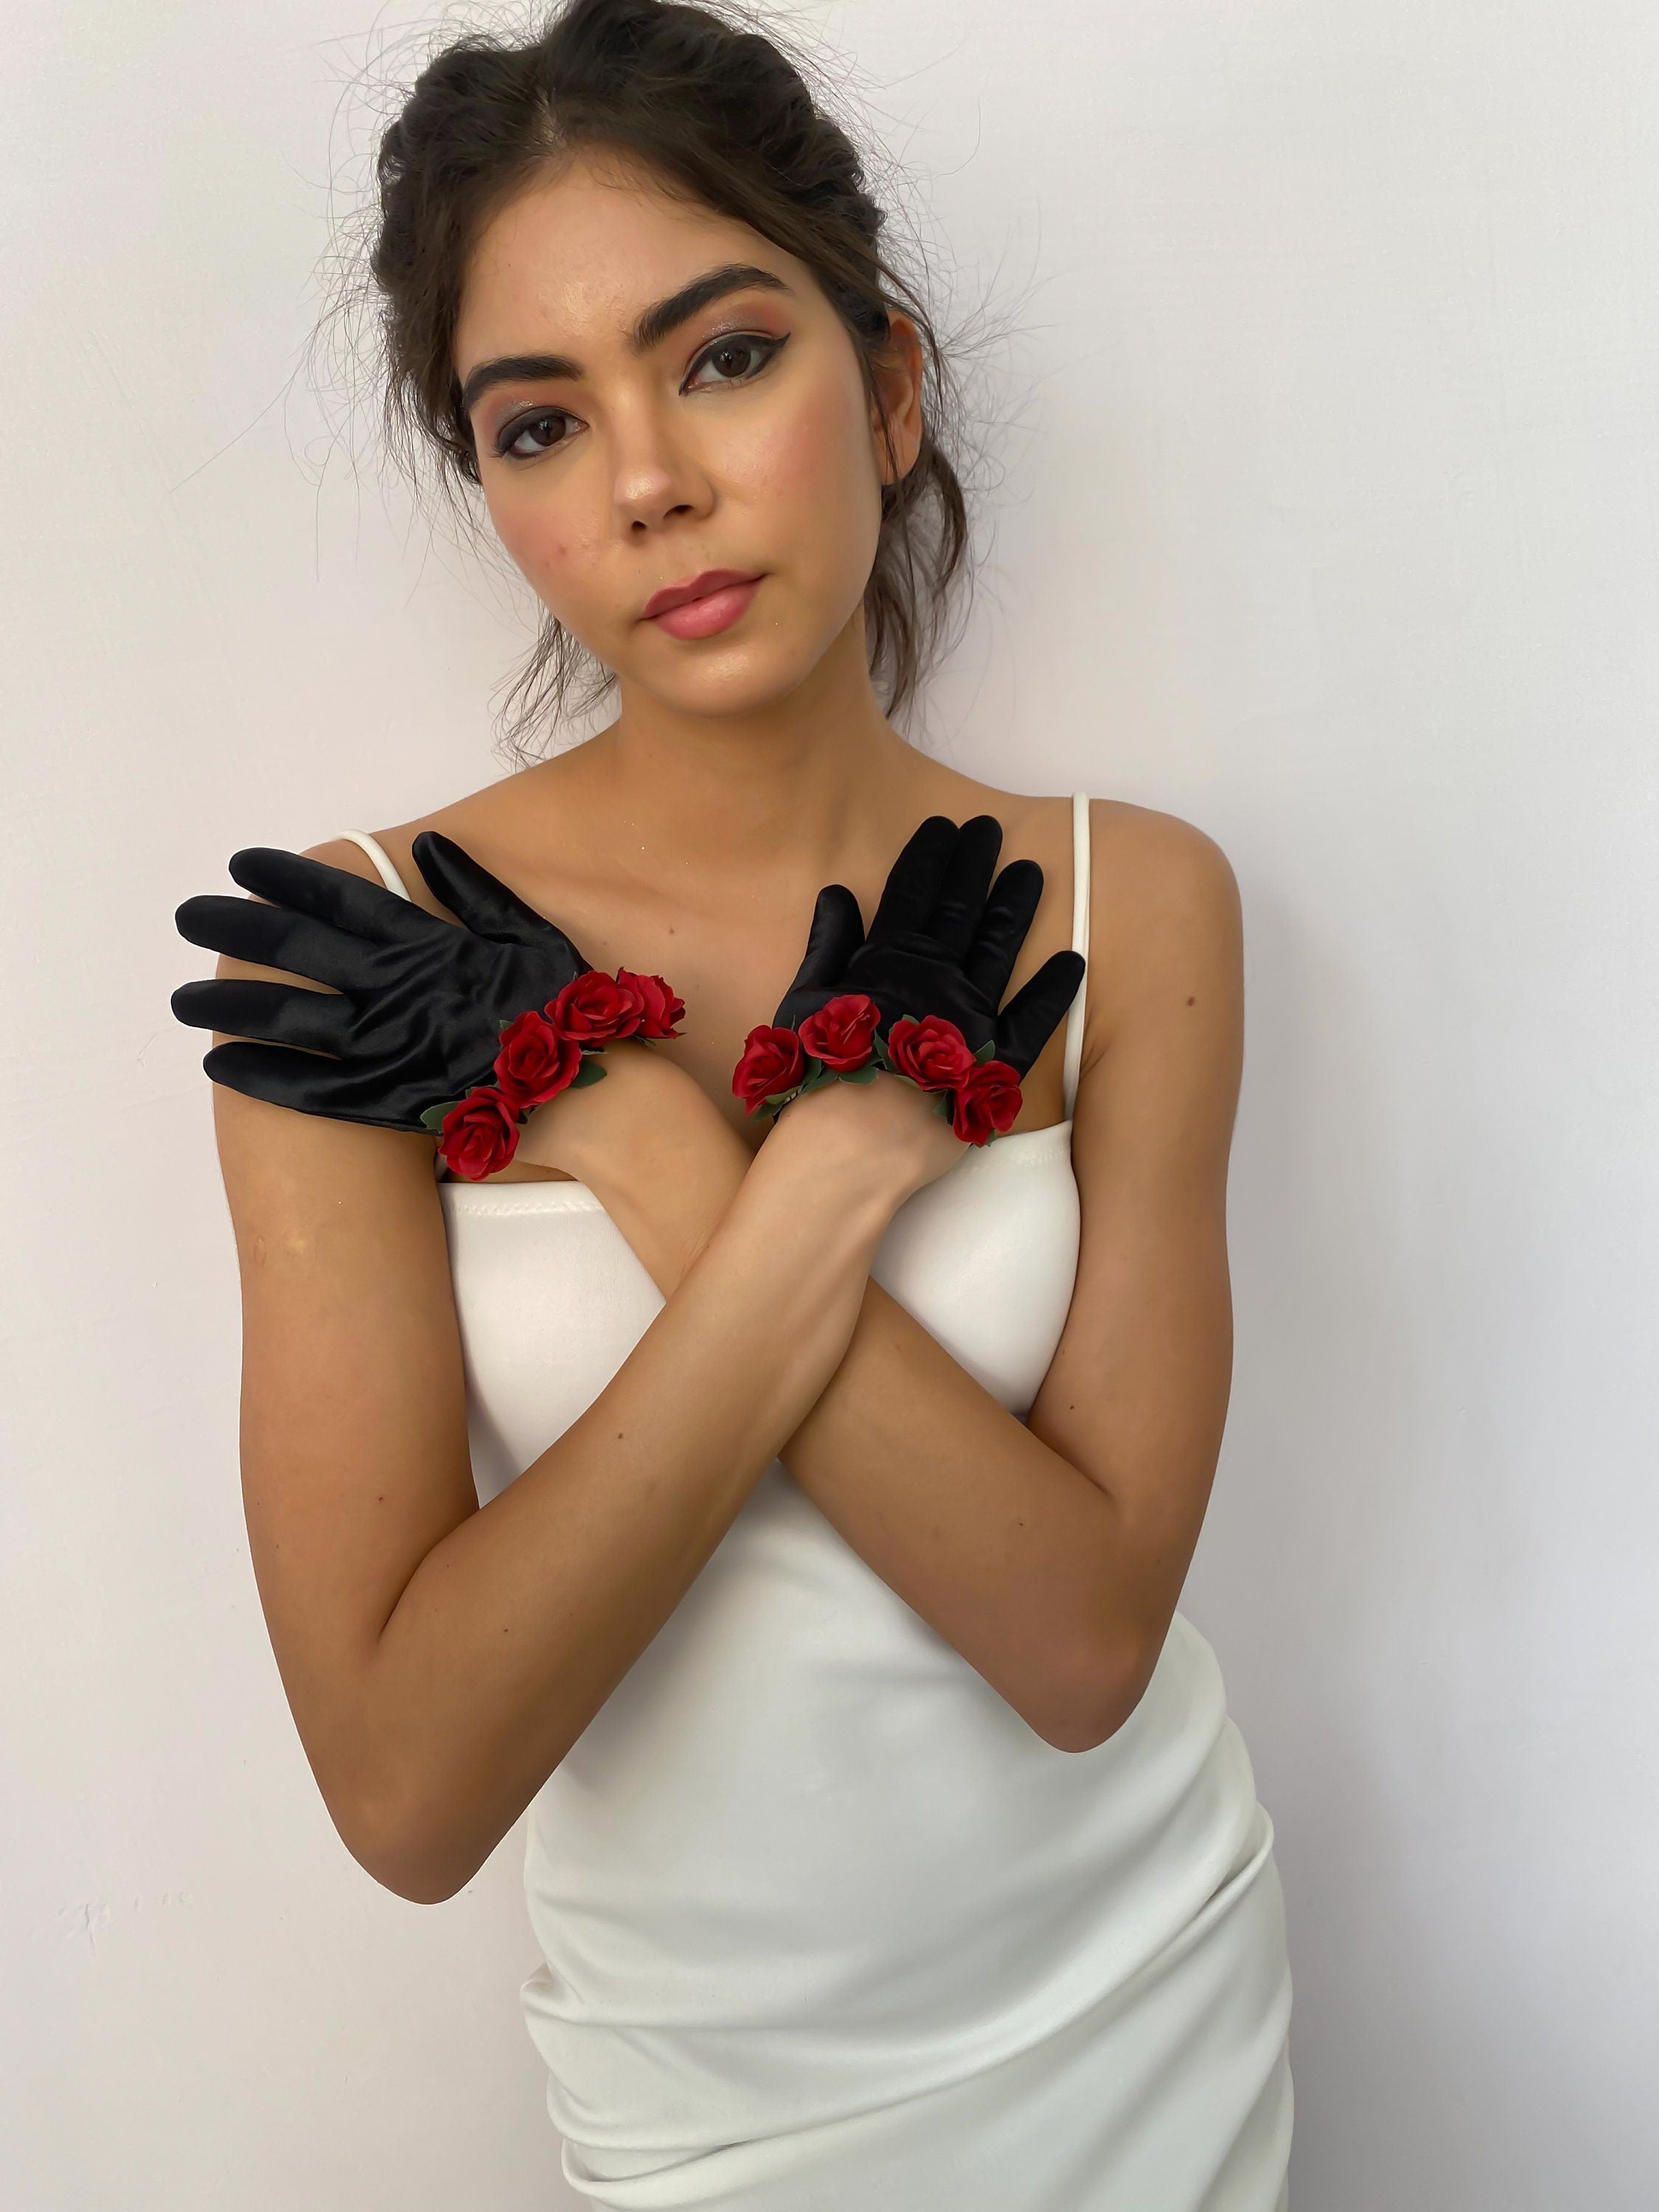 Silk and Roses Bracelet Gloves